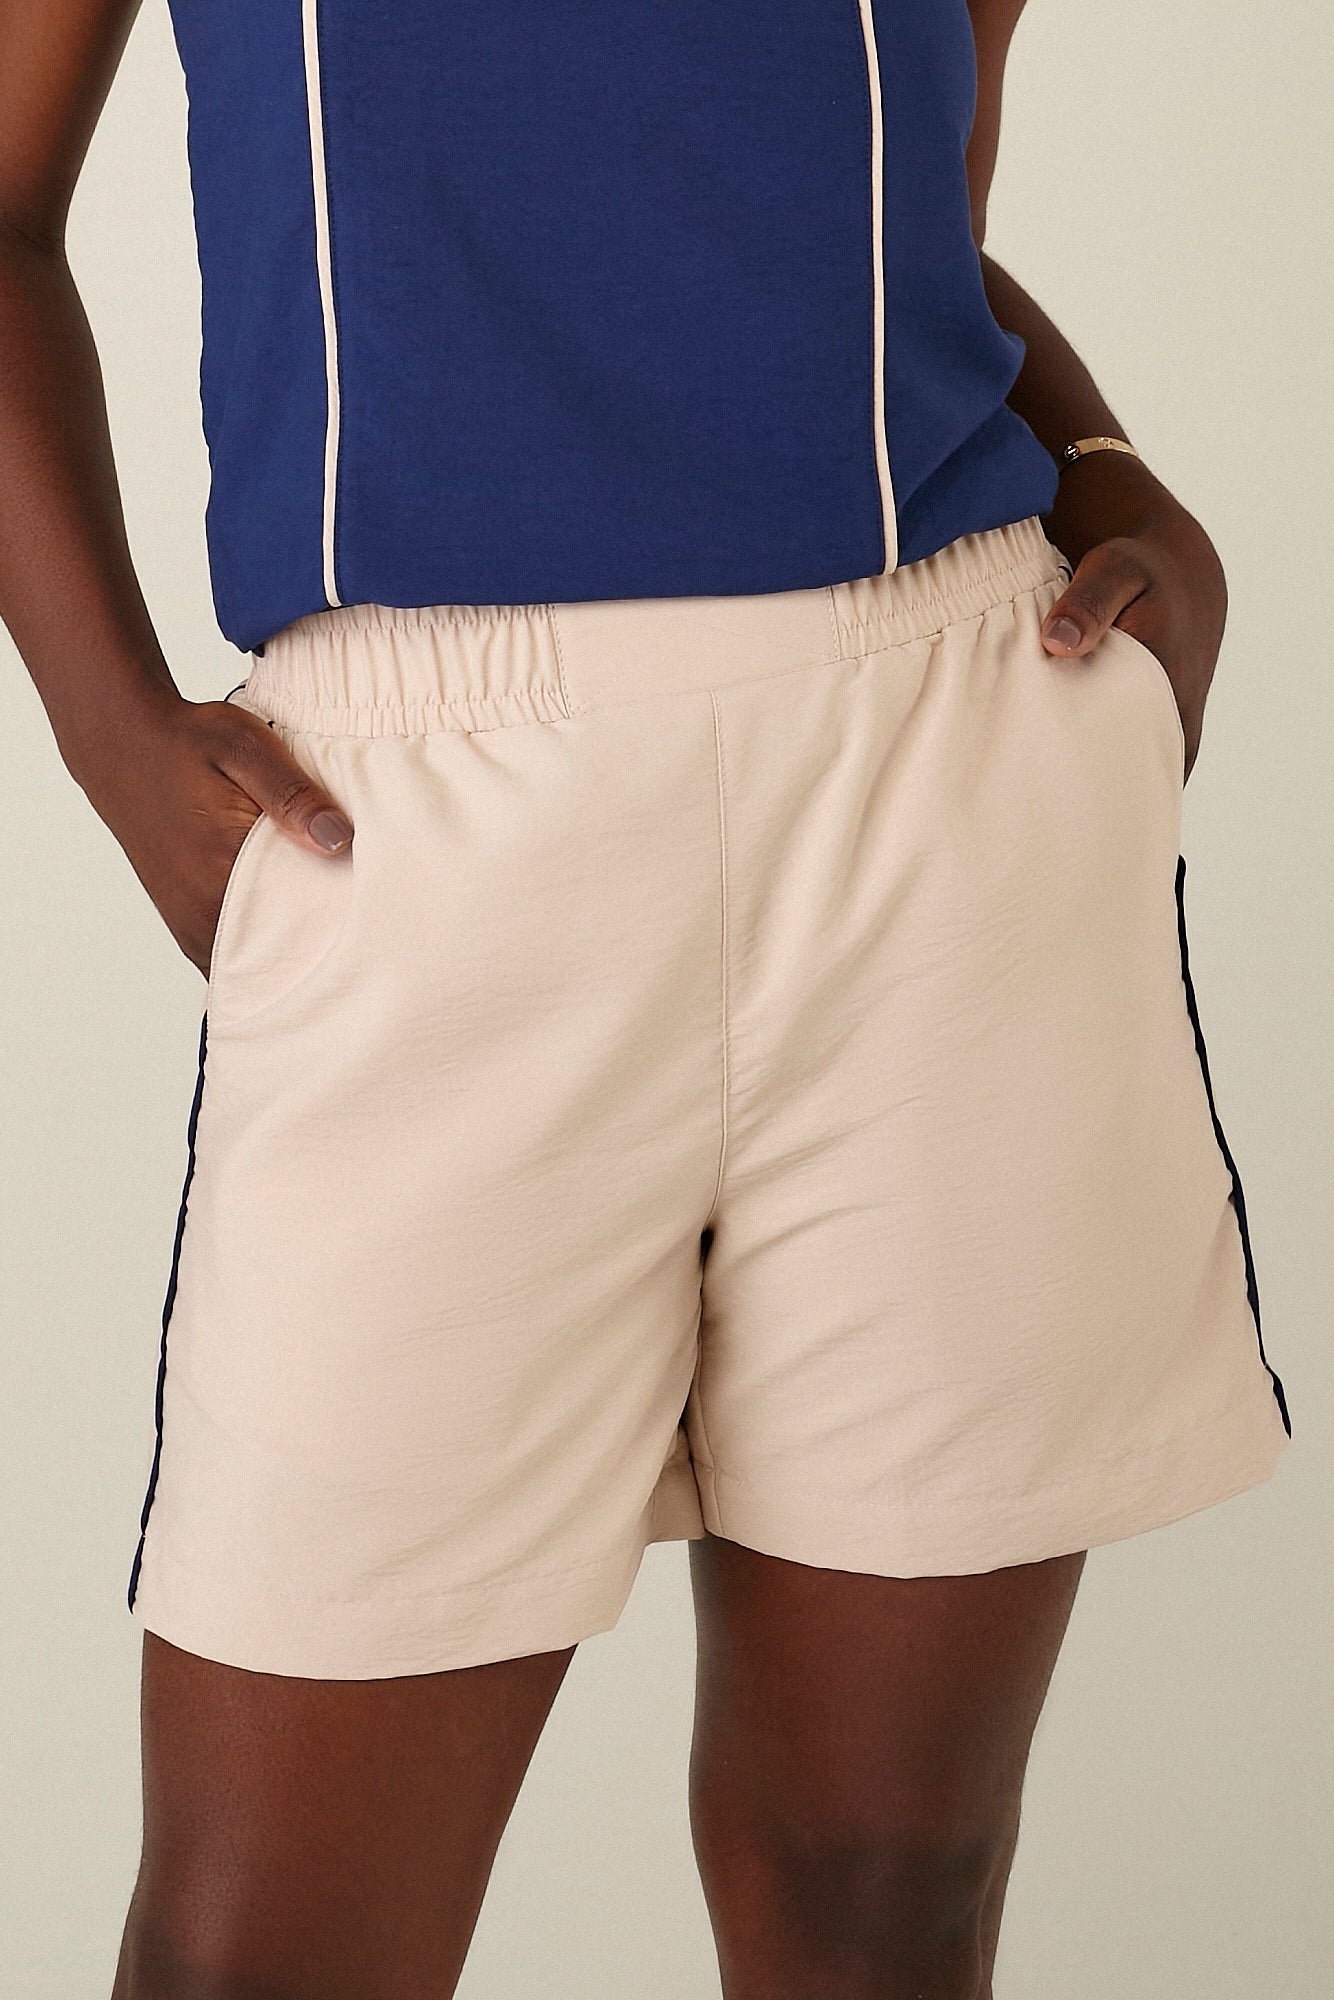 shorts tactel comfort cintura intermediária com detalhe bicolor